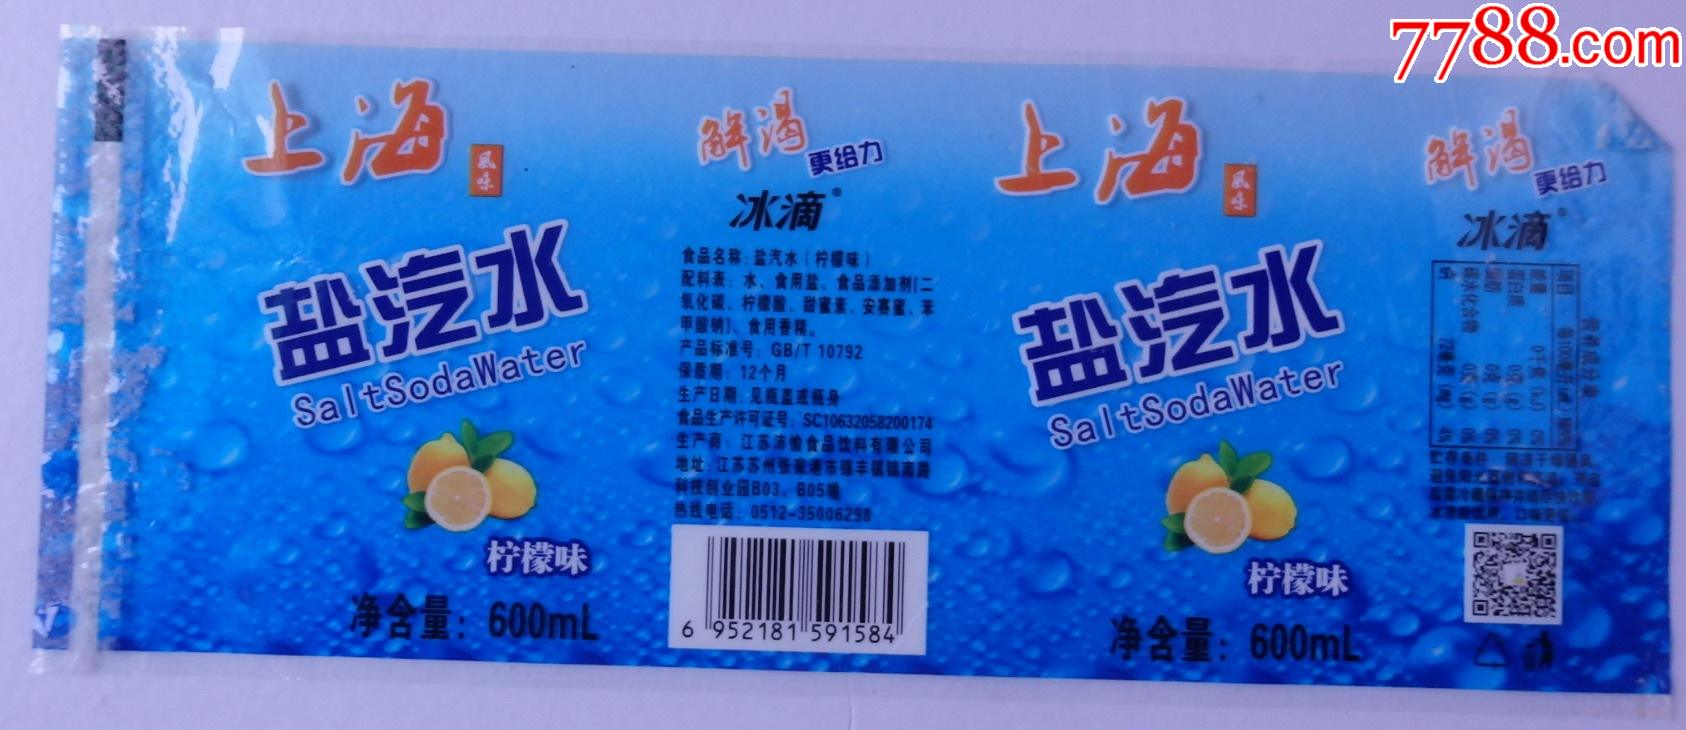 上海风味盐汽水柠檬味600毫升